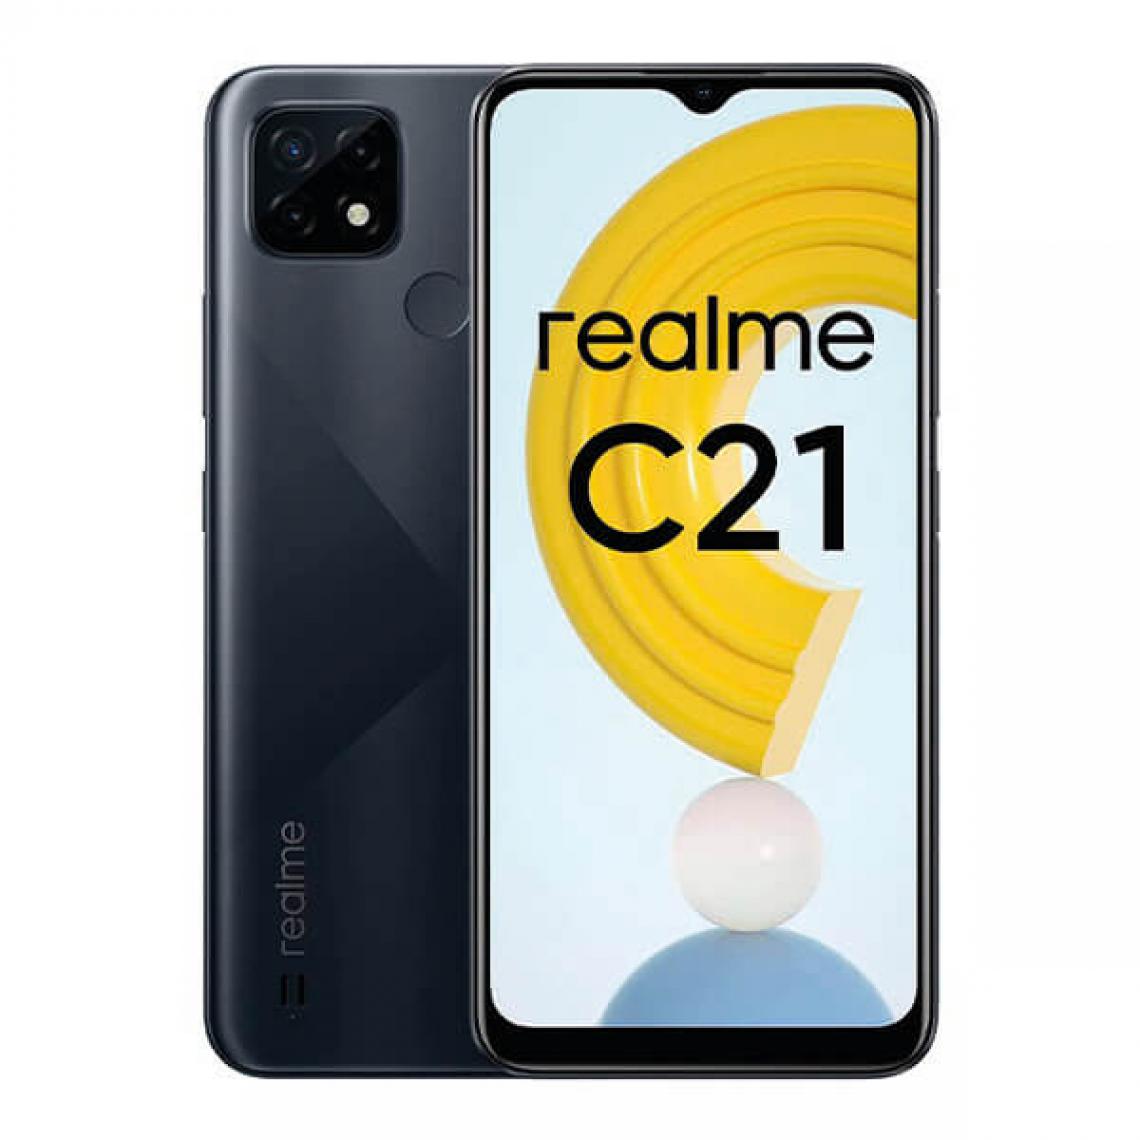 Realme - Realme C21 3Go/32Go Dual SIM Noir (Cross Black) - Smartphone Android